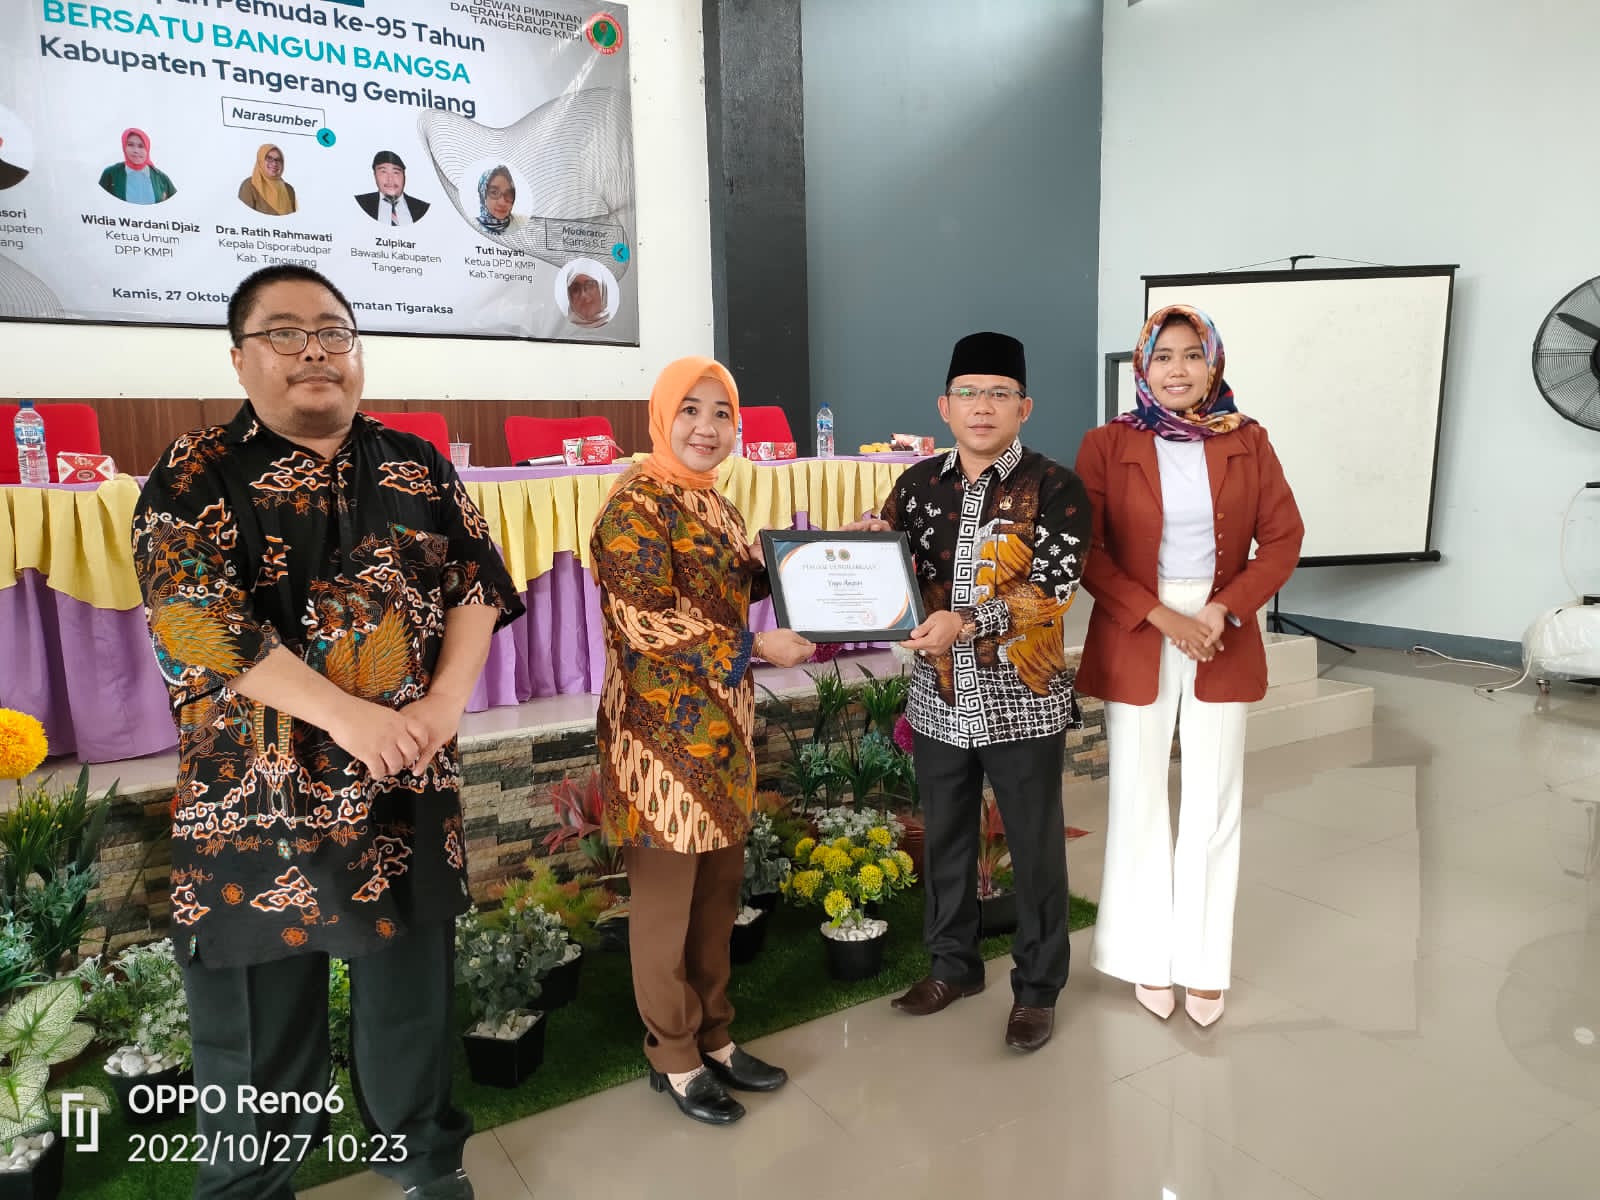 Rayakan Hari Sumpah Pemuda Ke 94 Tahun KOMITE MUDA PEREMPUAN INDONESIA Kab Tangerang Laksanakan Seminar Bersatu Bangun Bangsa Kabupaten Tangerang Gemilang